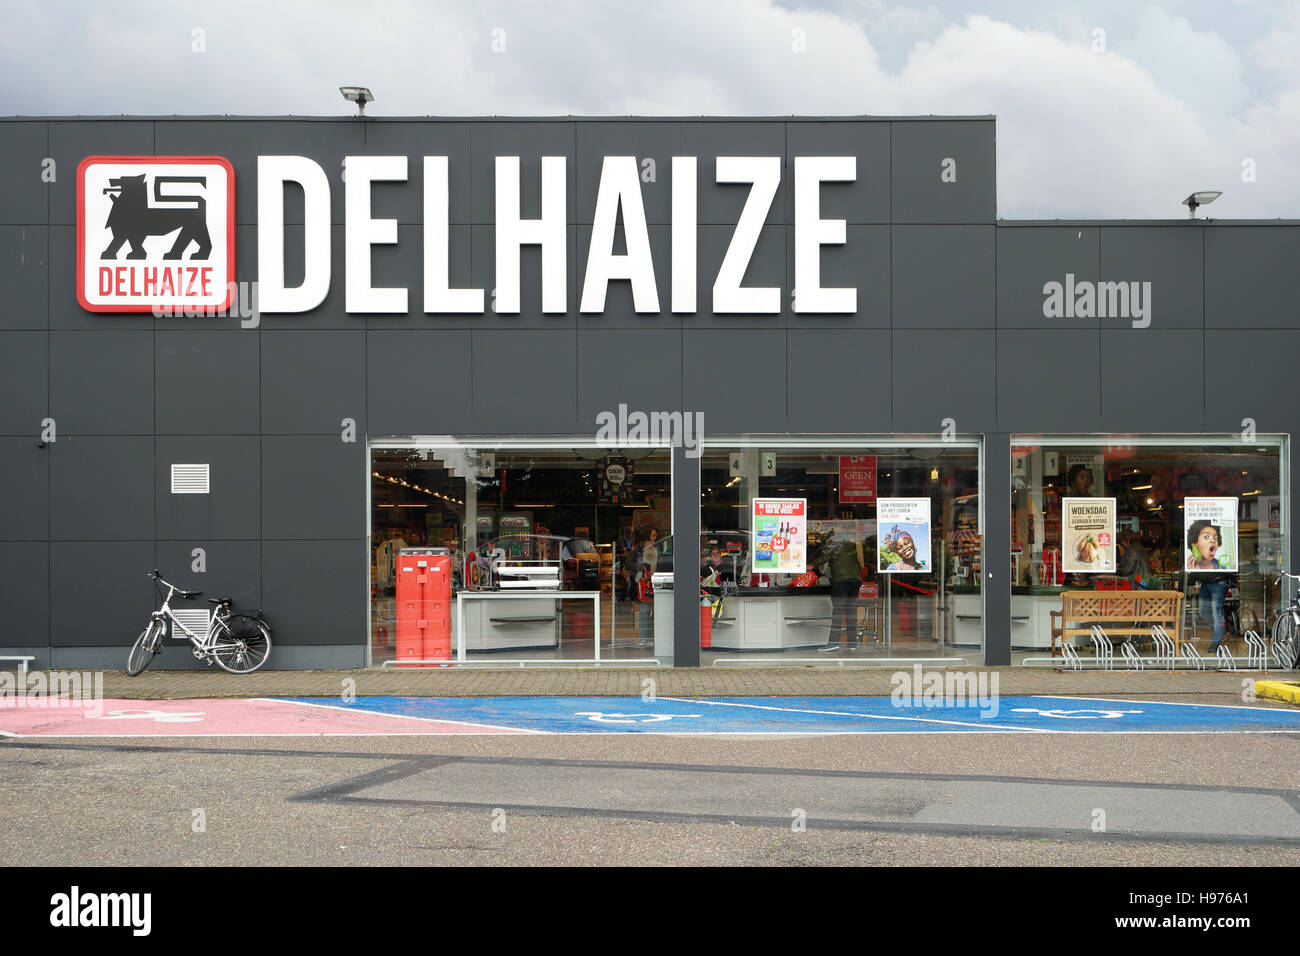 Sucursal de un supermercado Delhaize en Bélgica. Foto de stock